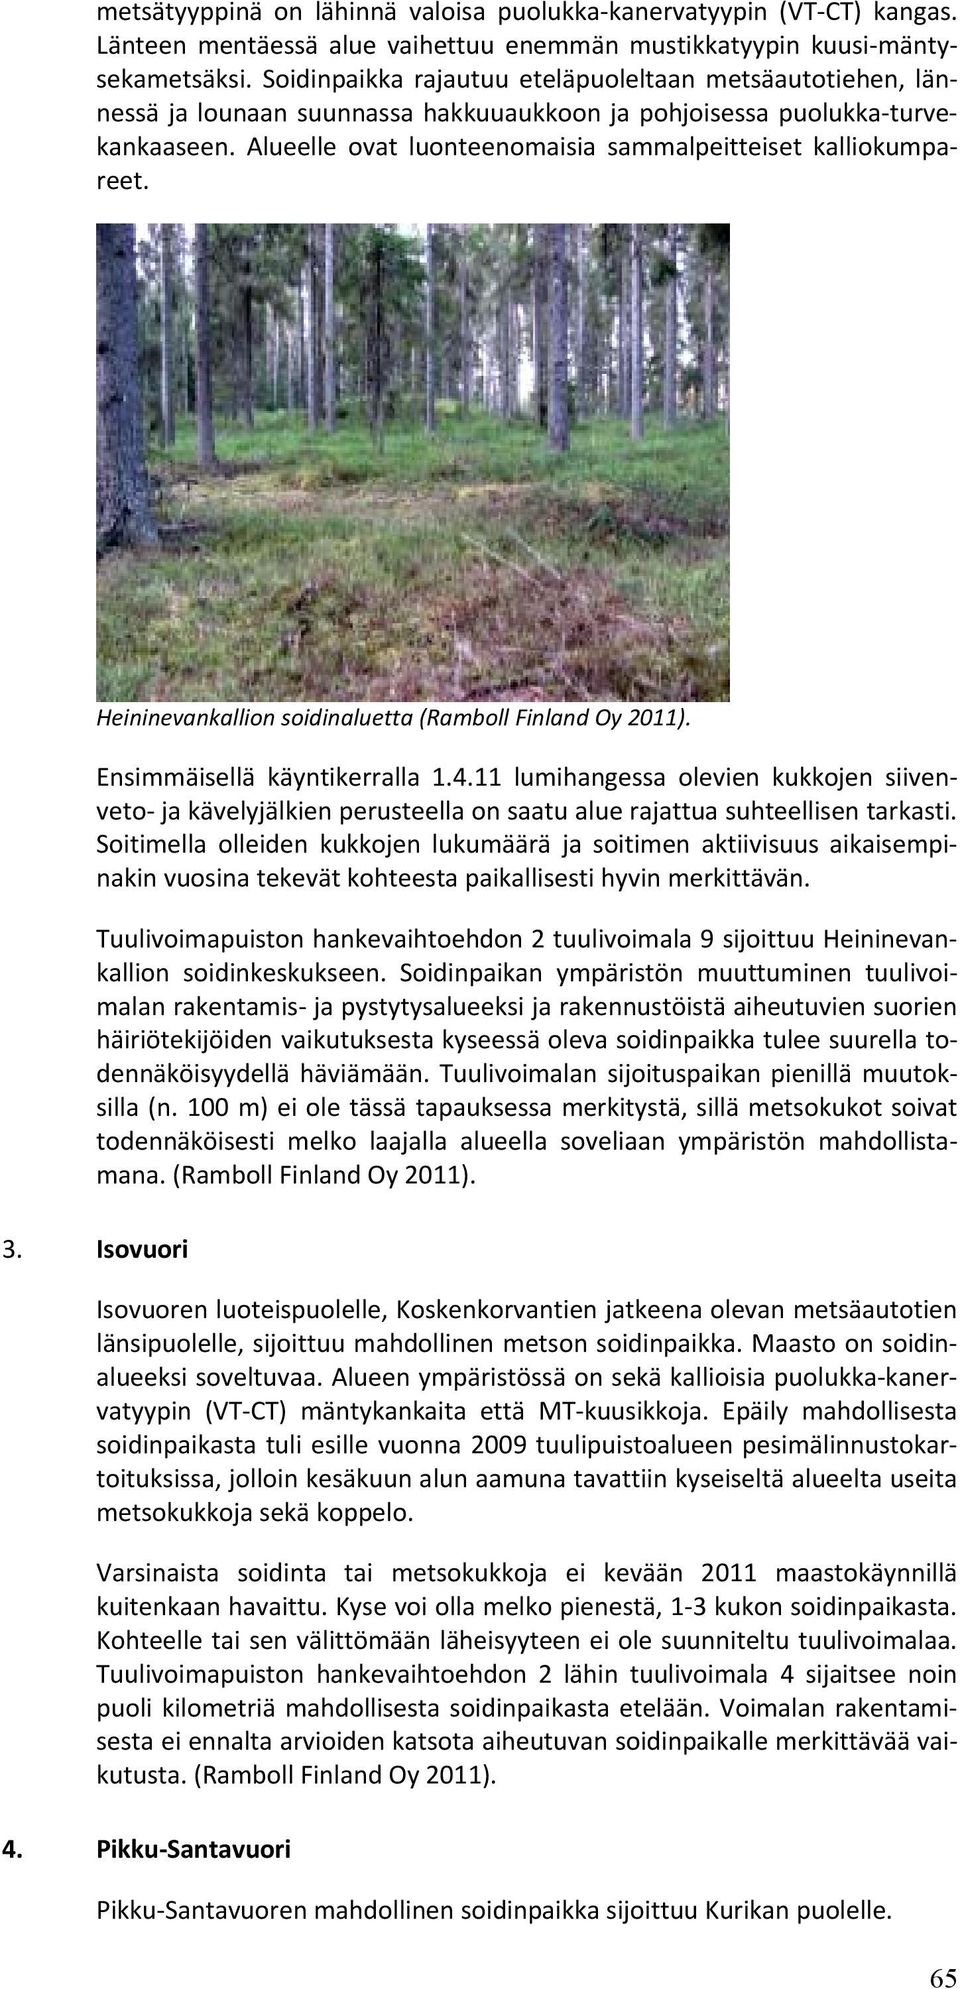 Alueelle ovat luonteenomaisia sammalpeitteiset kalliokumpareet. Heininevankallion soidinaluetta (Ramboll Finland Oy 2011). Ensimmäisellä käyntikerralla 1.4.